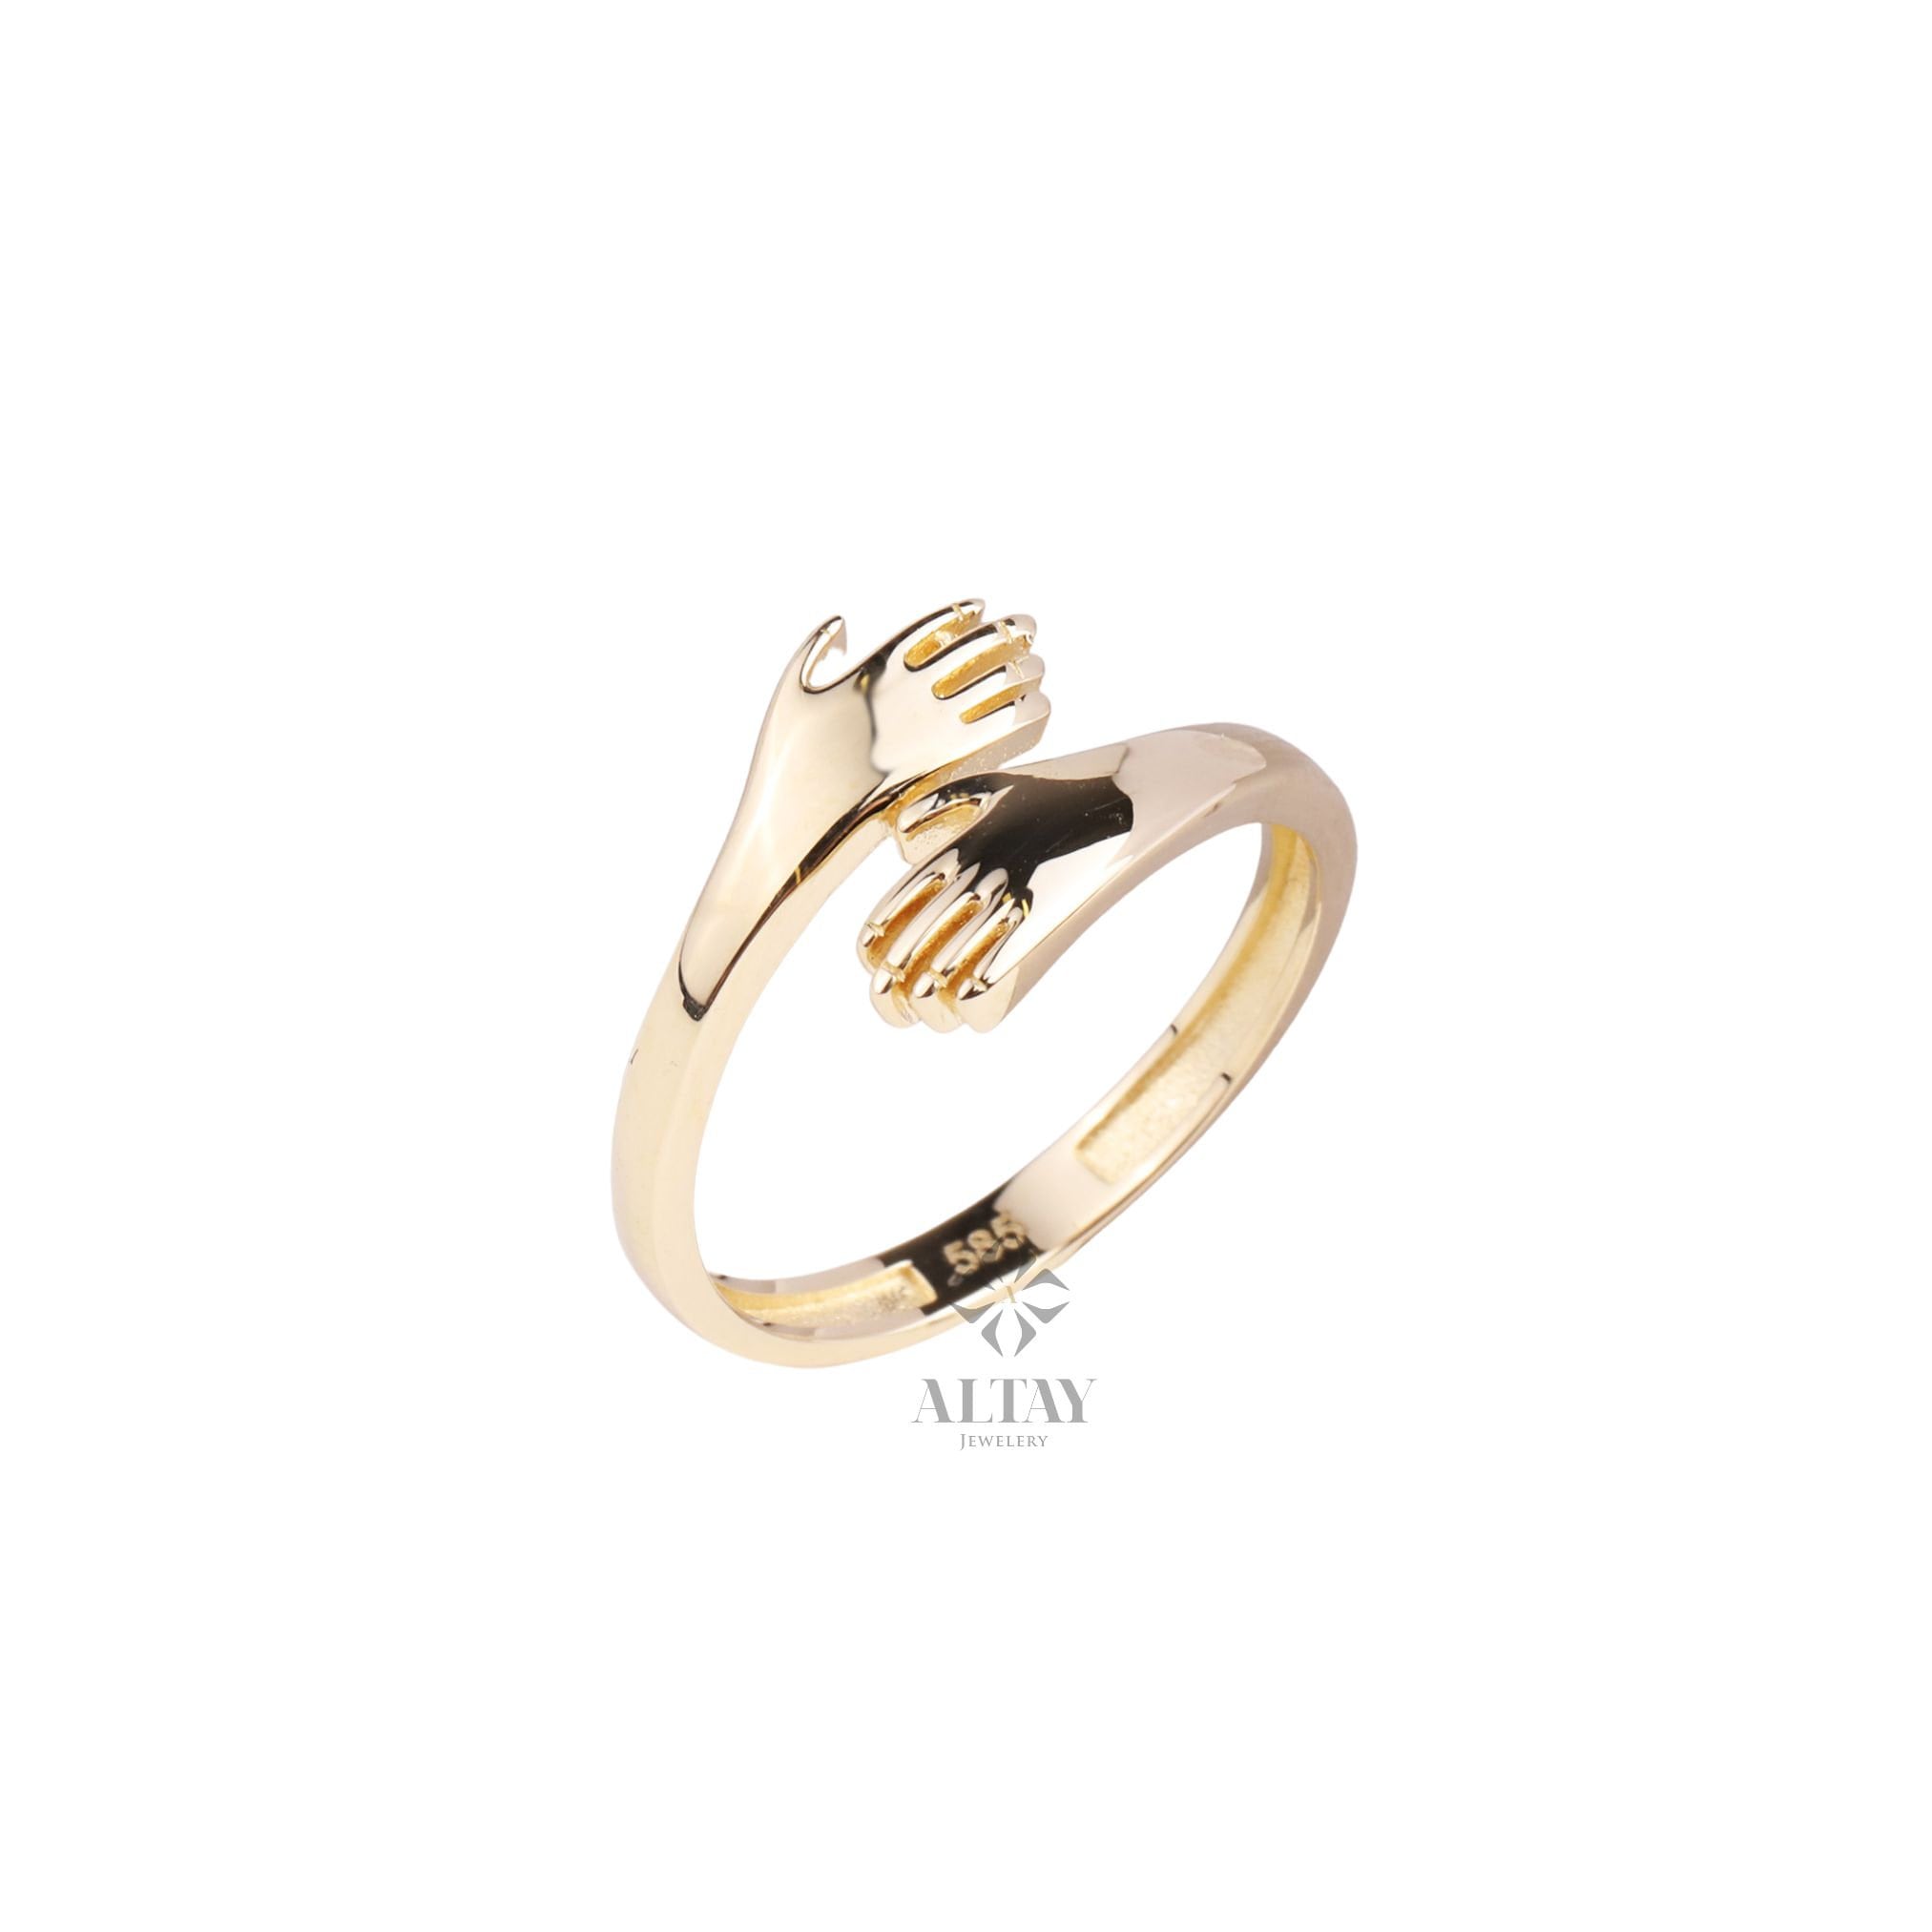 14K Gold Hug Ring, Engraved Love Hugging Hands Ring, Dainty Hug Gold Ring, Couple Love Hugging, Simple Handmade Ring, Two Hand Custom Ring